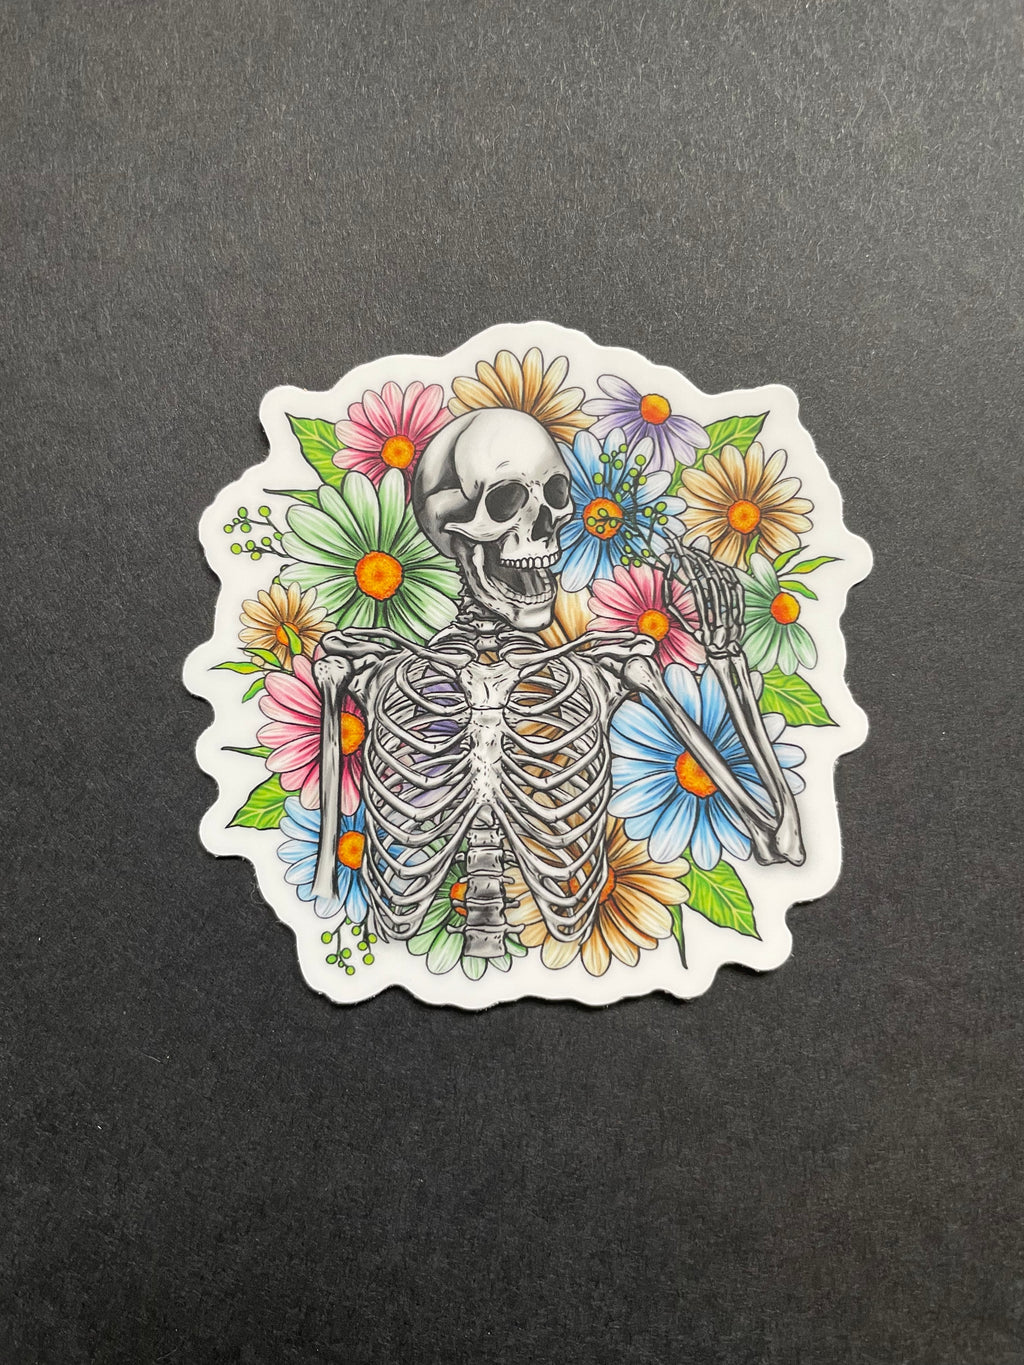 Skeleton Sticker, Flowers, Floral, Waterproof, Decal, Tumbler Sticker, Laptop, Water Bottle